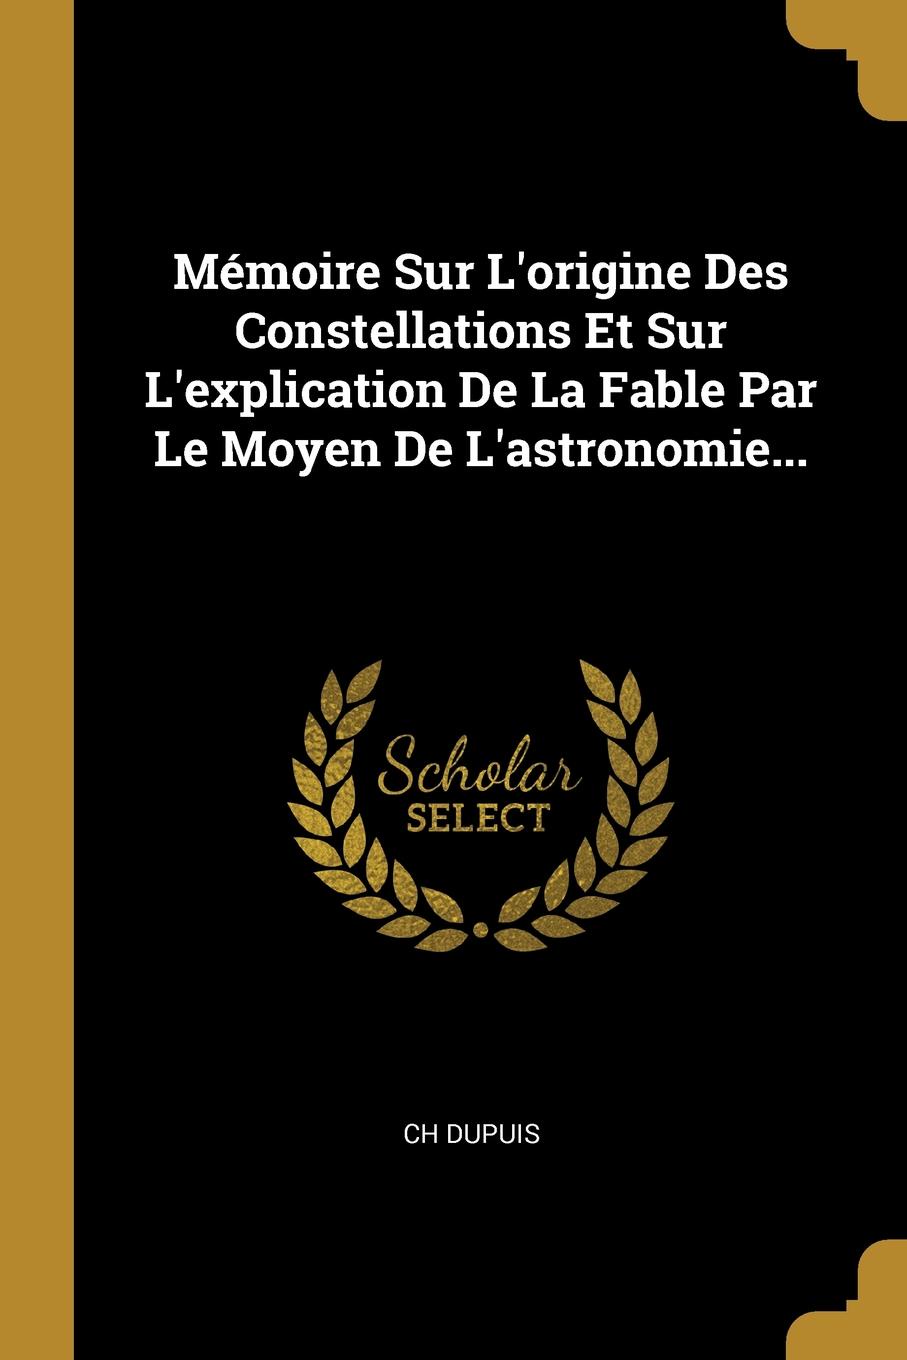 Memoire Sur L.origine Des Constellations Et Sur L.explication De La Fable Par Le Moyen De L.astronomie...